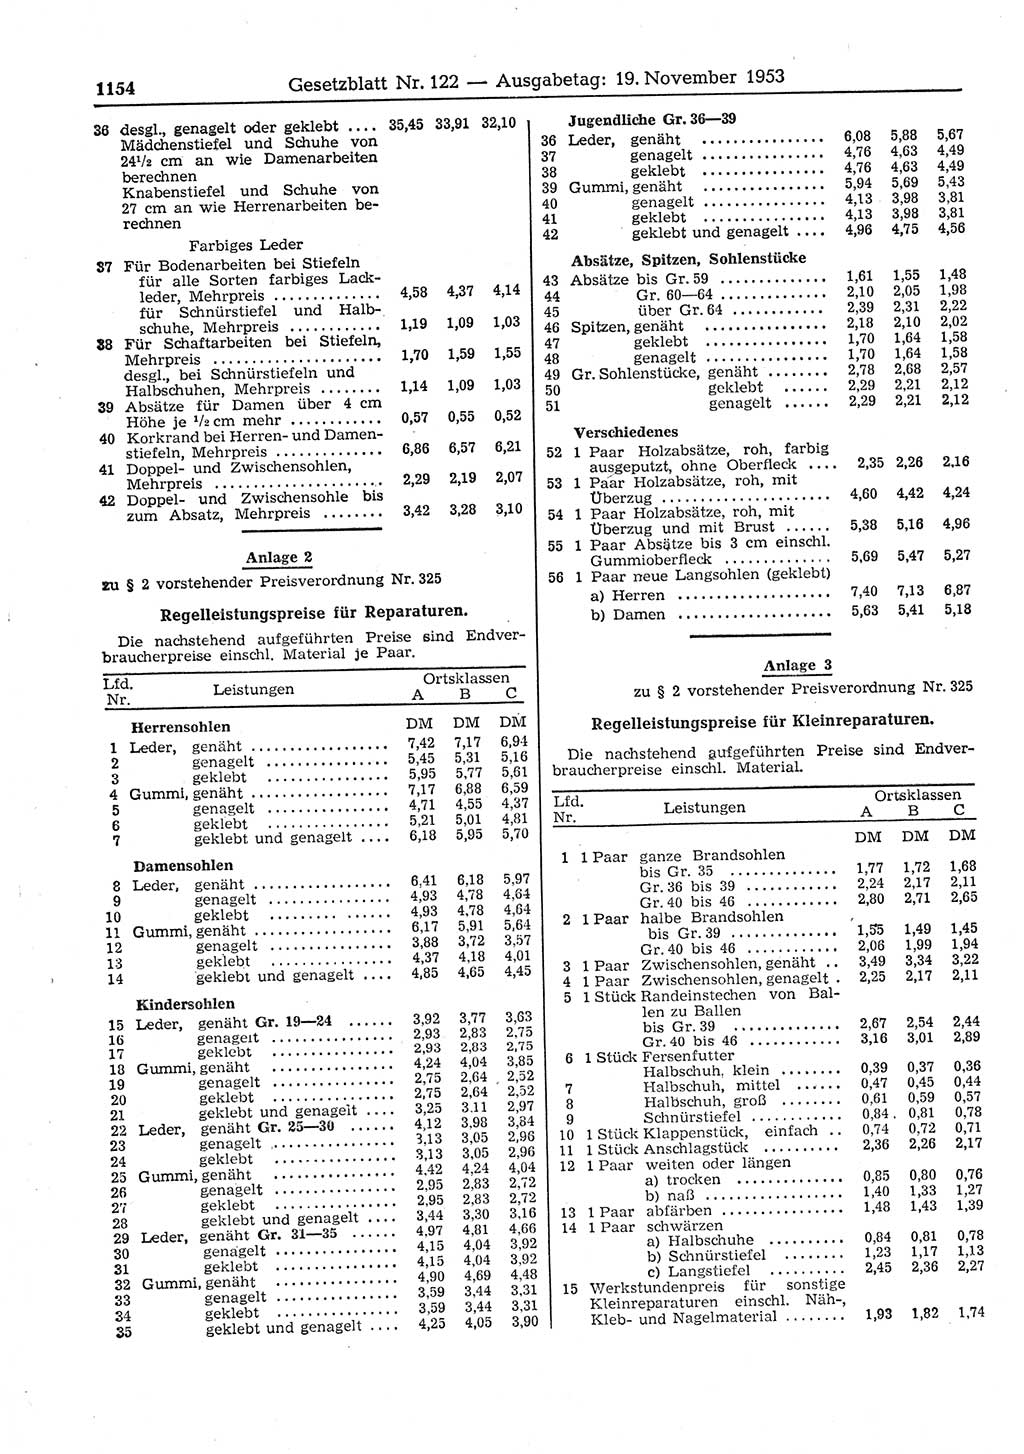 Gesetzblatt (GBl.) der Deutschen Demokratischen Republik (DDR) 1953, Seite 1154 (GBl. DDR 1953, S. 1154)